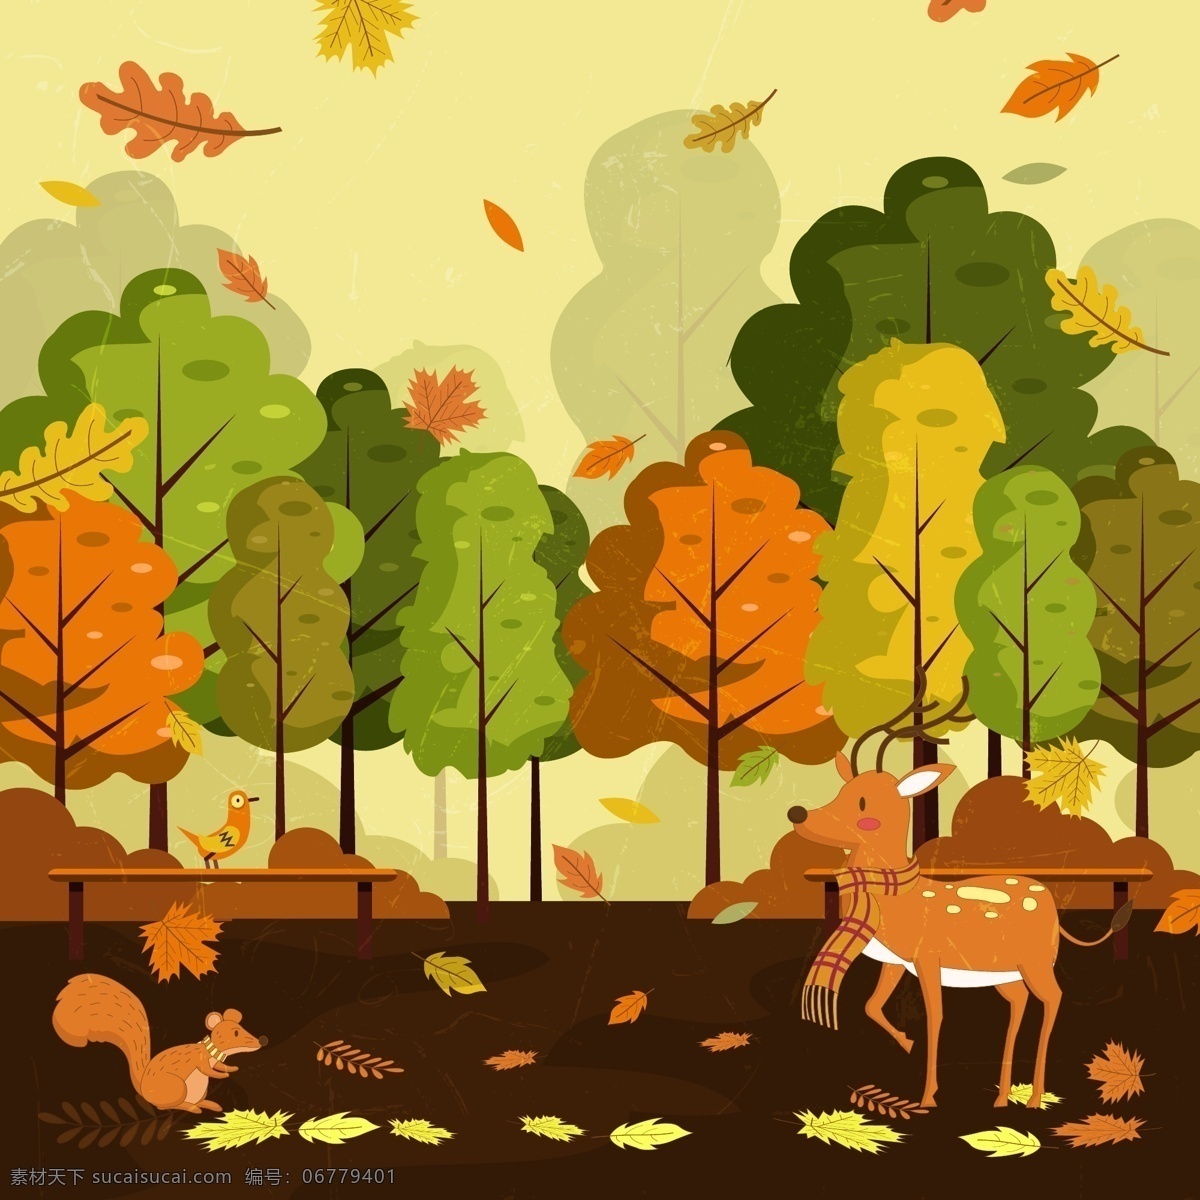 秋天 公园 里 动物图片 树叶 落叶 树木 松鼠 长椅 矢量 高清图片